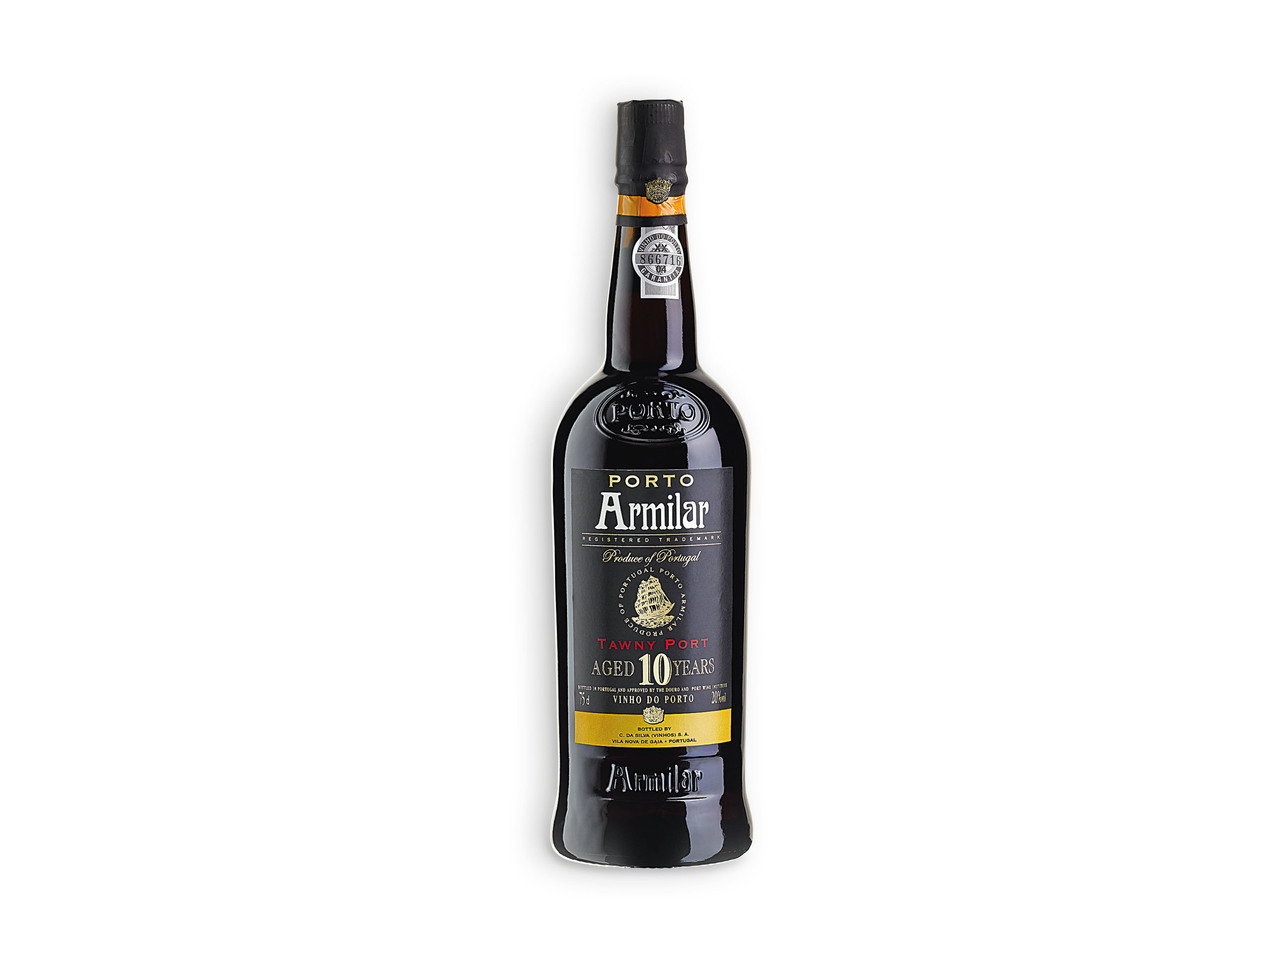 ARMILAR(R) Vinho do Porto 10 Anos